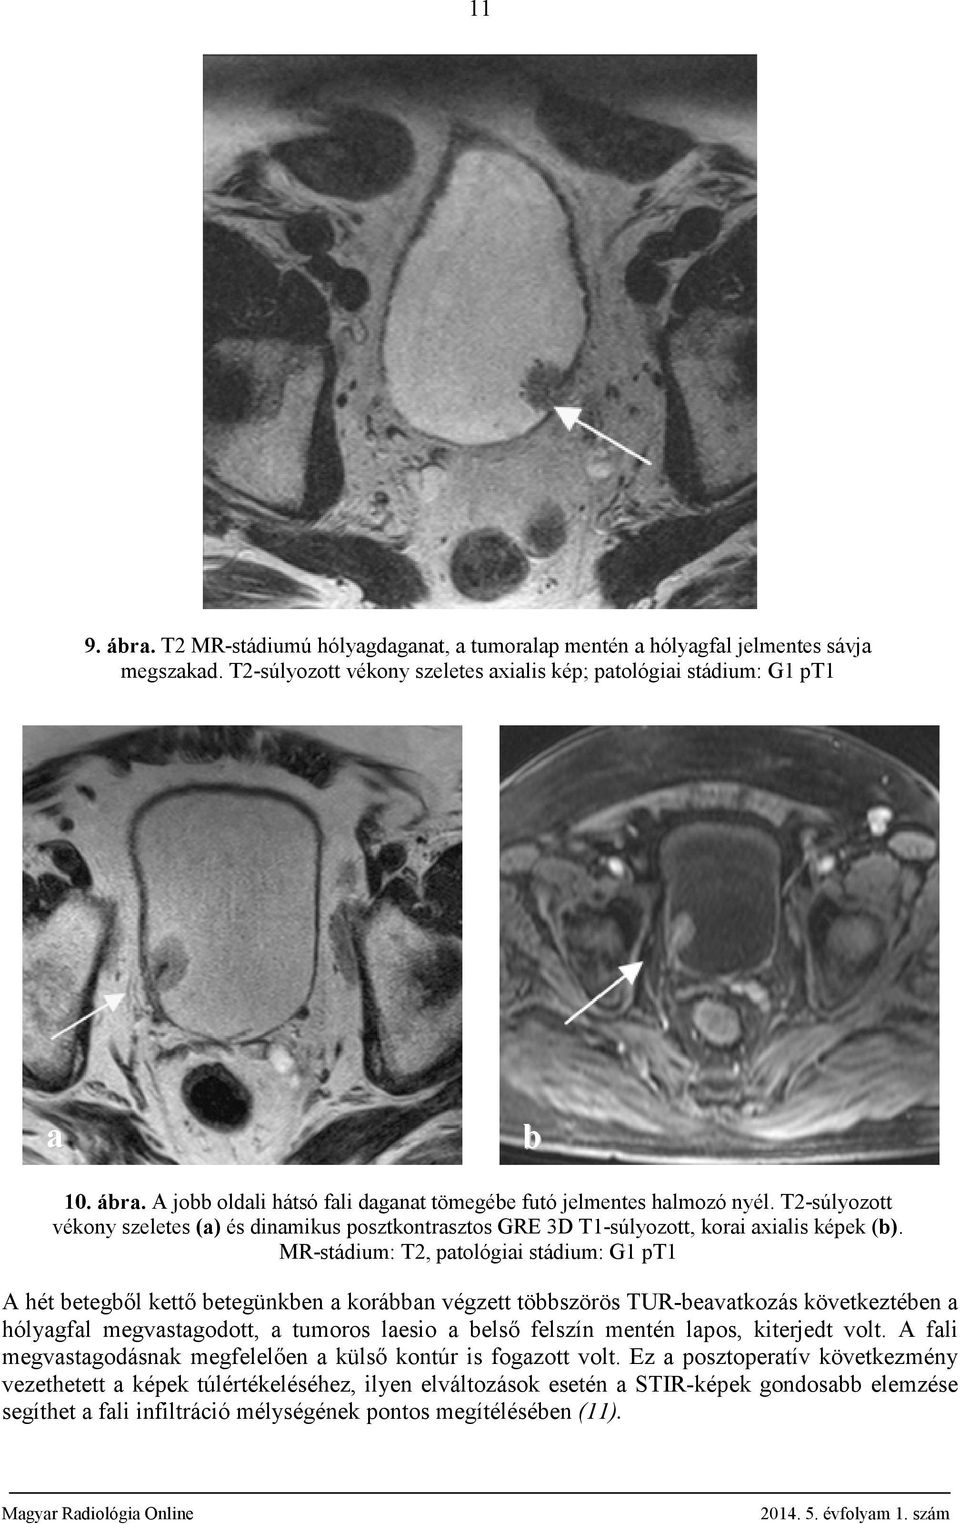 MR-stádium: T2, patológiai stádium: G1 pt1 A hét betegből kettő betegünkben a korábban végzett többszörös TUR-beavatkozás következtében a hólyagfal megvastagodott, a tumoros laesio a belső felszín